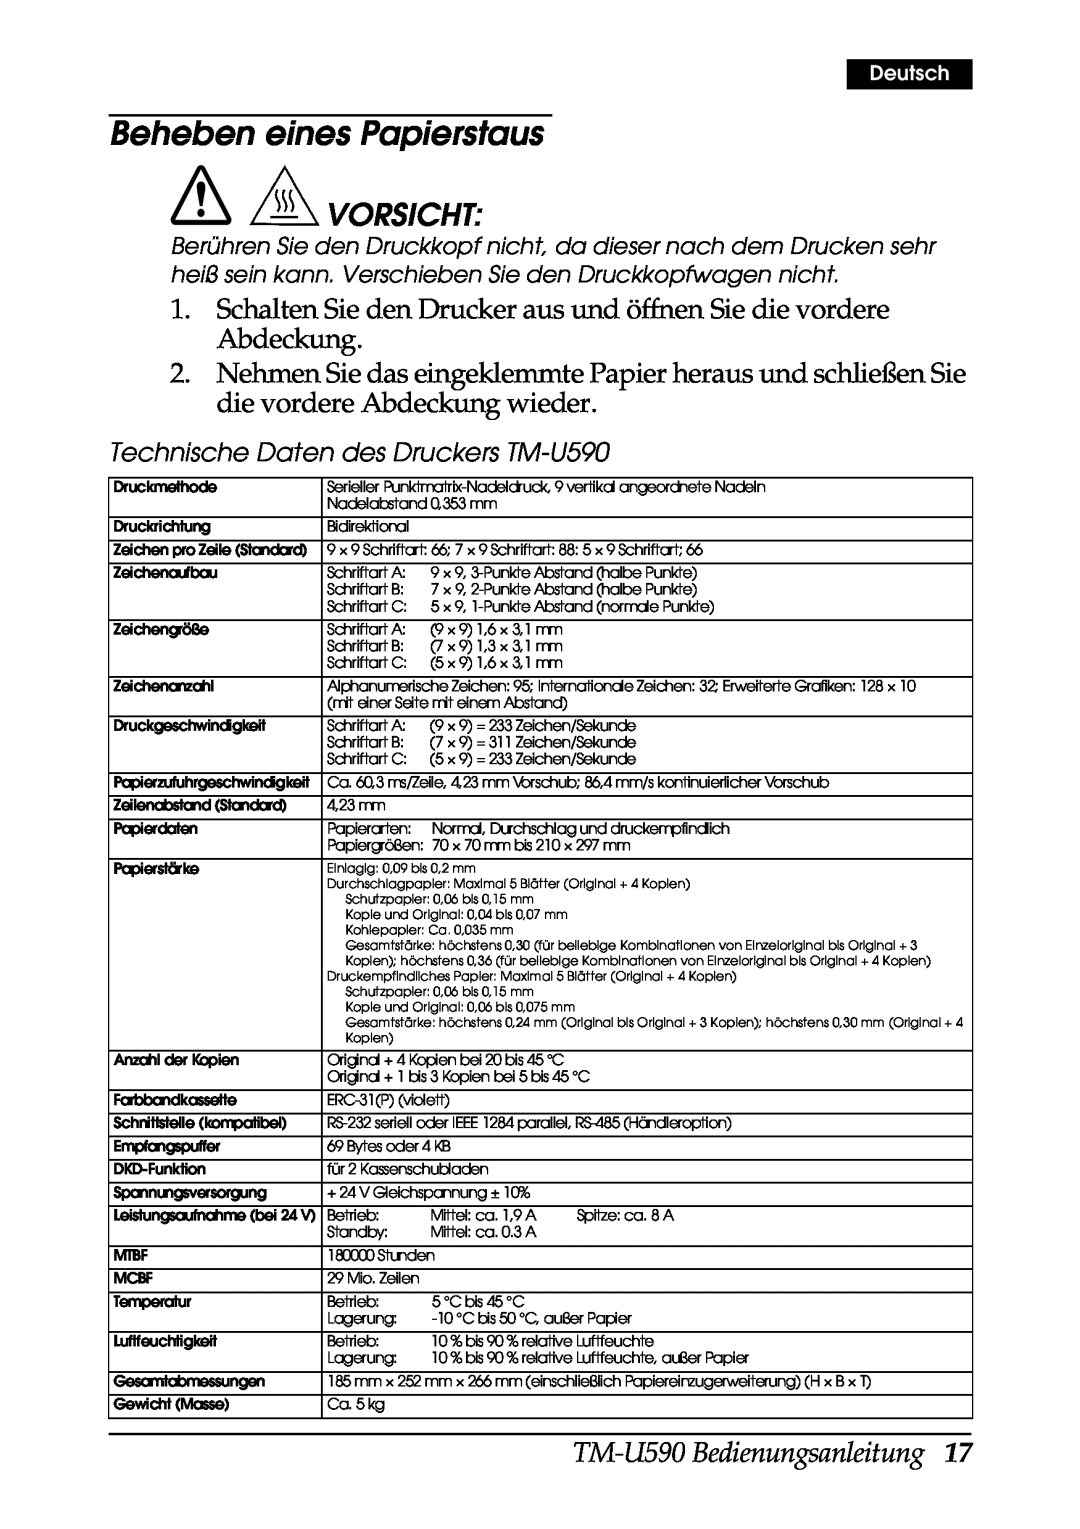 FARGO electronic user manual Beheben eines Papierstaus, Vorsicht, TM-U590 Bedienungsanleitung, Deutsch 